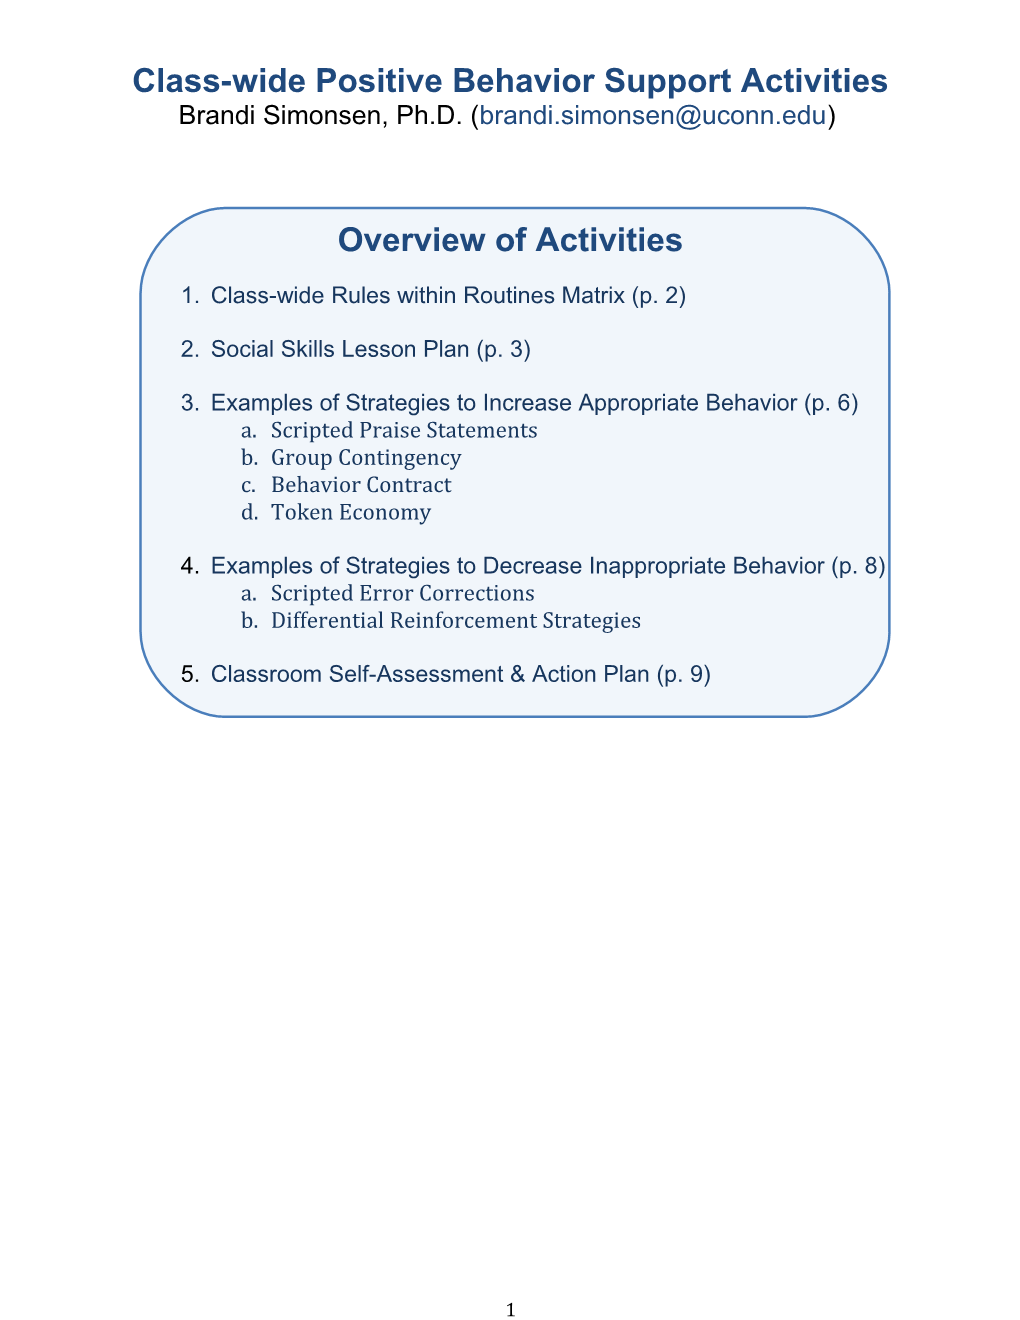 Class-Wide Positive Behavior Support Activities